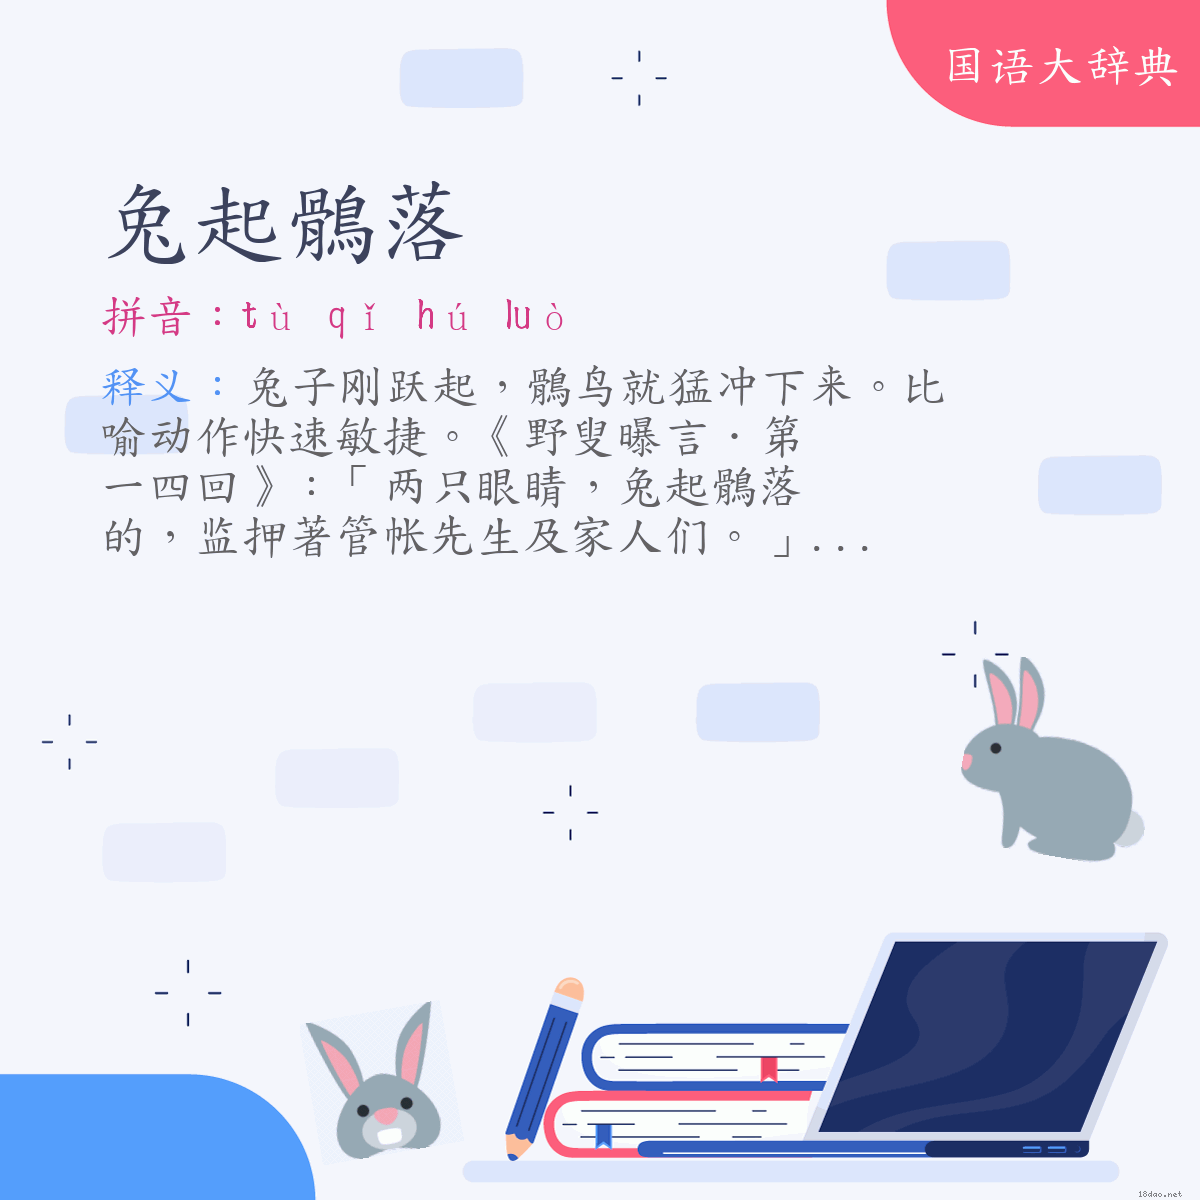 词语:兔起鶻落 (注音:ㄊㄨˋ　ㄑㄧˇ　ㄏㄨˊ　ㄌㄨㄛˋ)